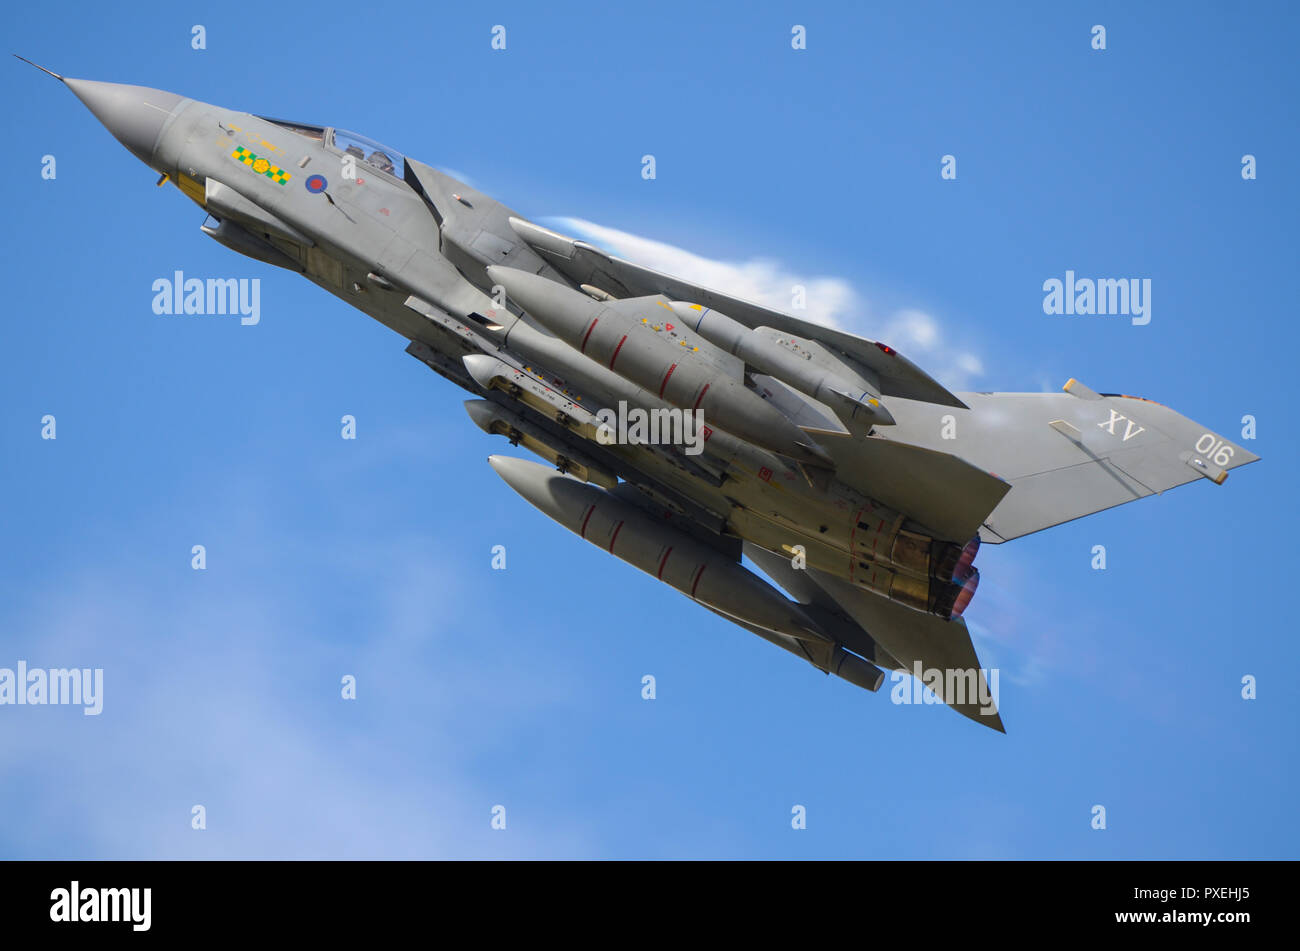 RAF Royal Air Force Panavia Tornado GR4 jet da combattimento aereo bombardiere arrampicata in velocità con la condensazione di vapore formando sopra l'ala. Cielo blu Foto Stock